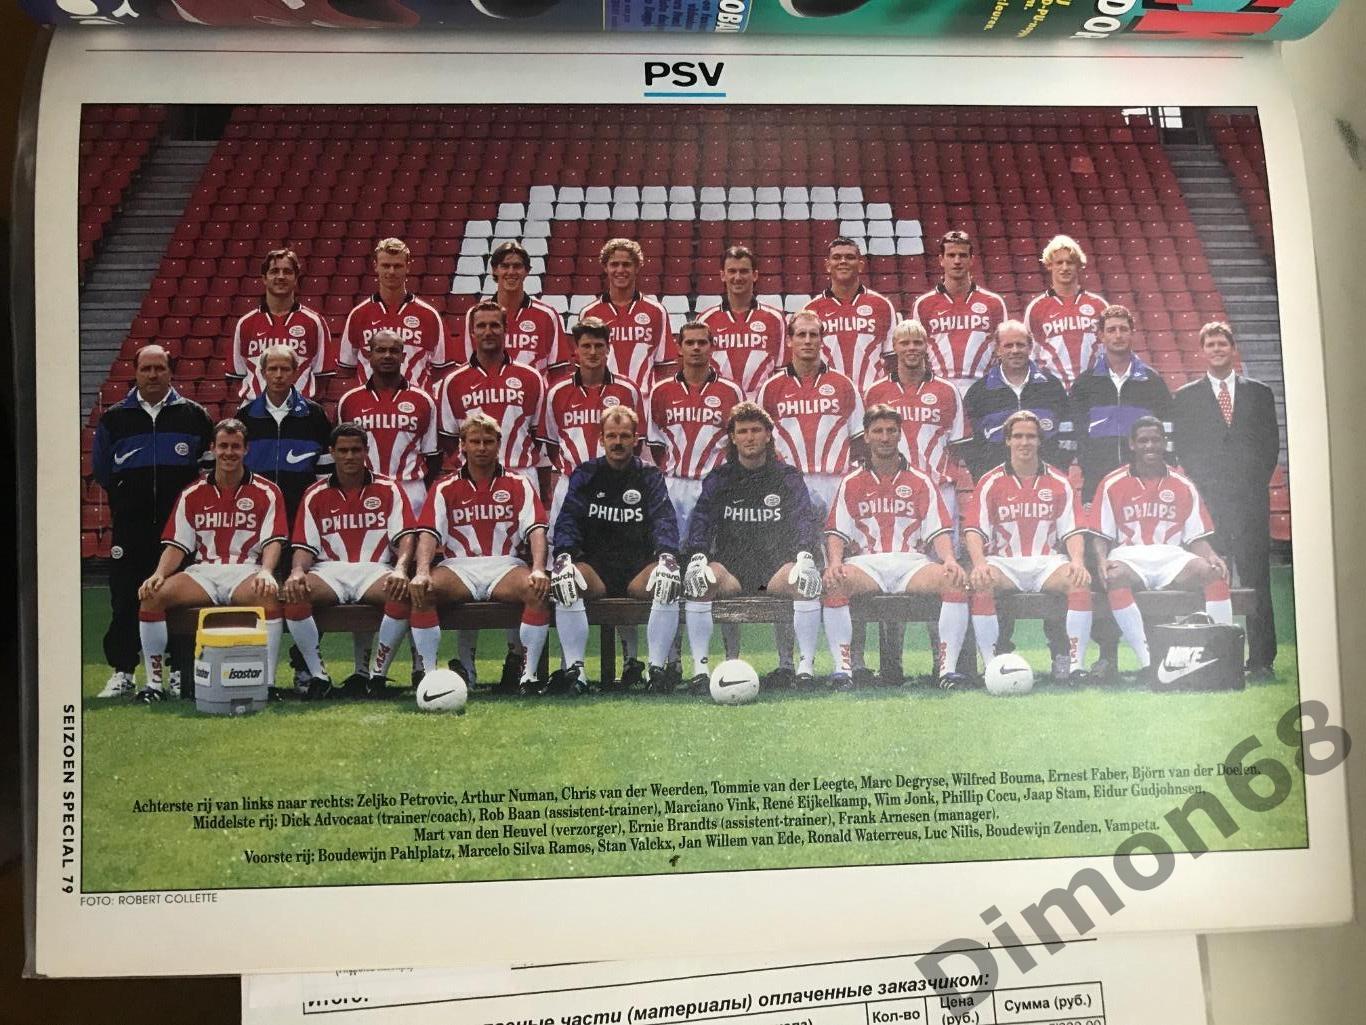 voetbal international special постеры чем голландии 96/97 3